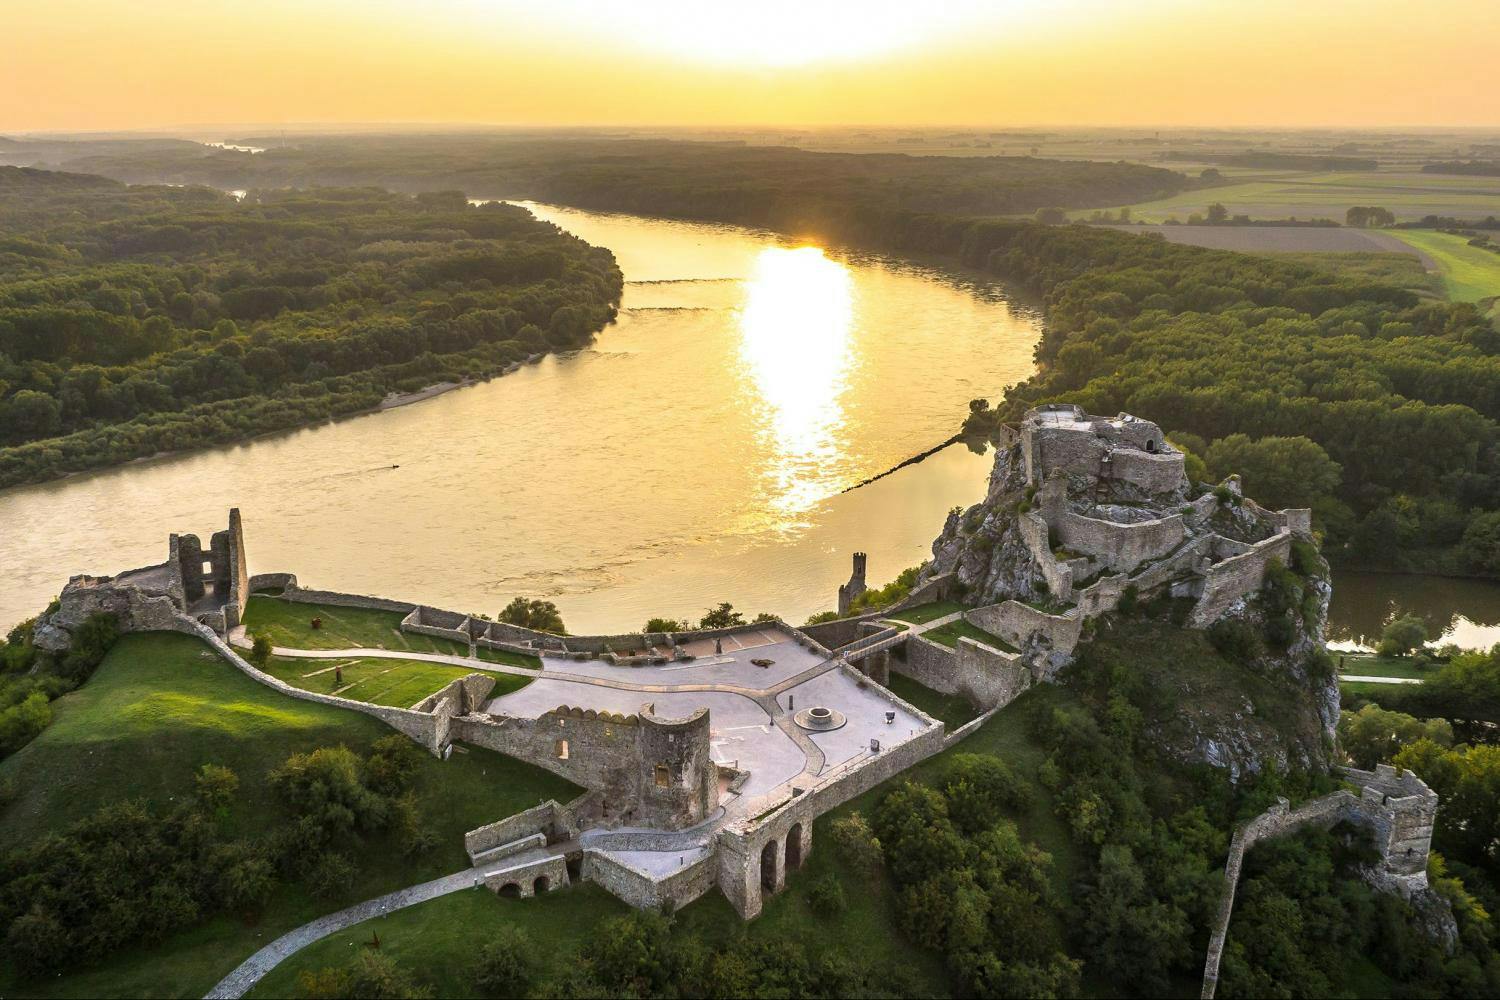 Visita a la gran ciudad de Bratislava, incluido el castillo de Devin